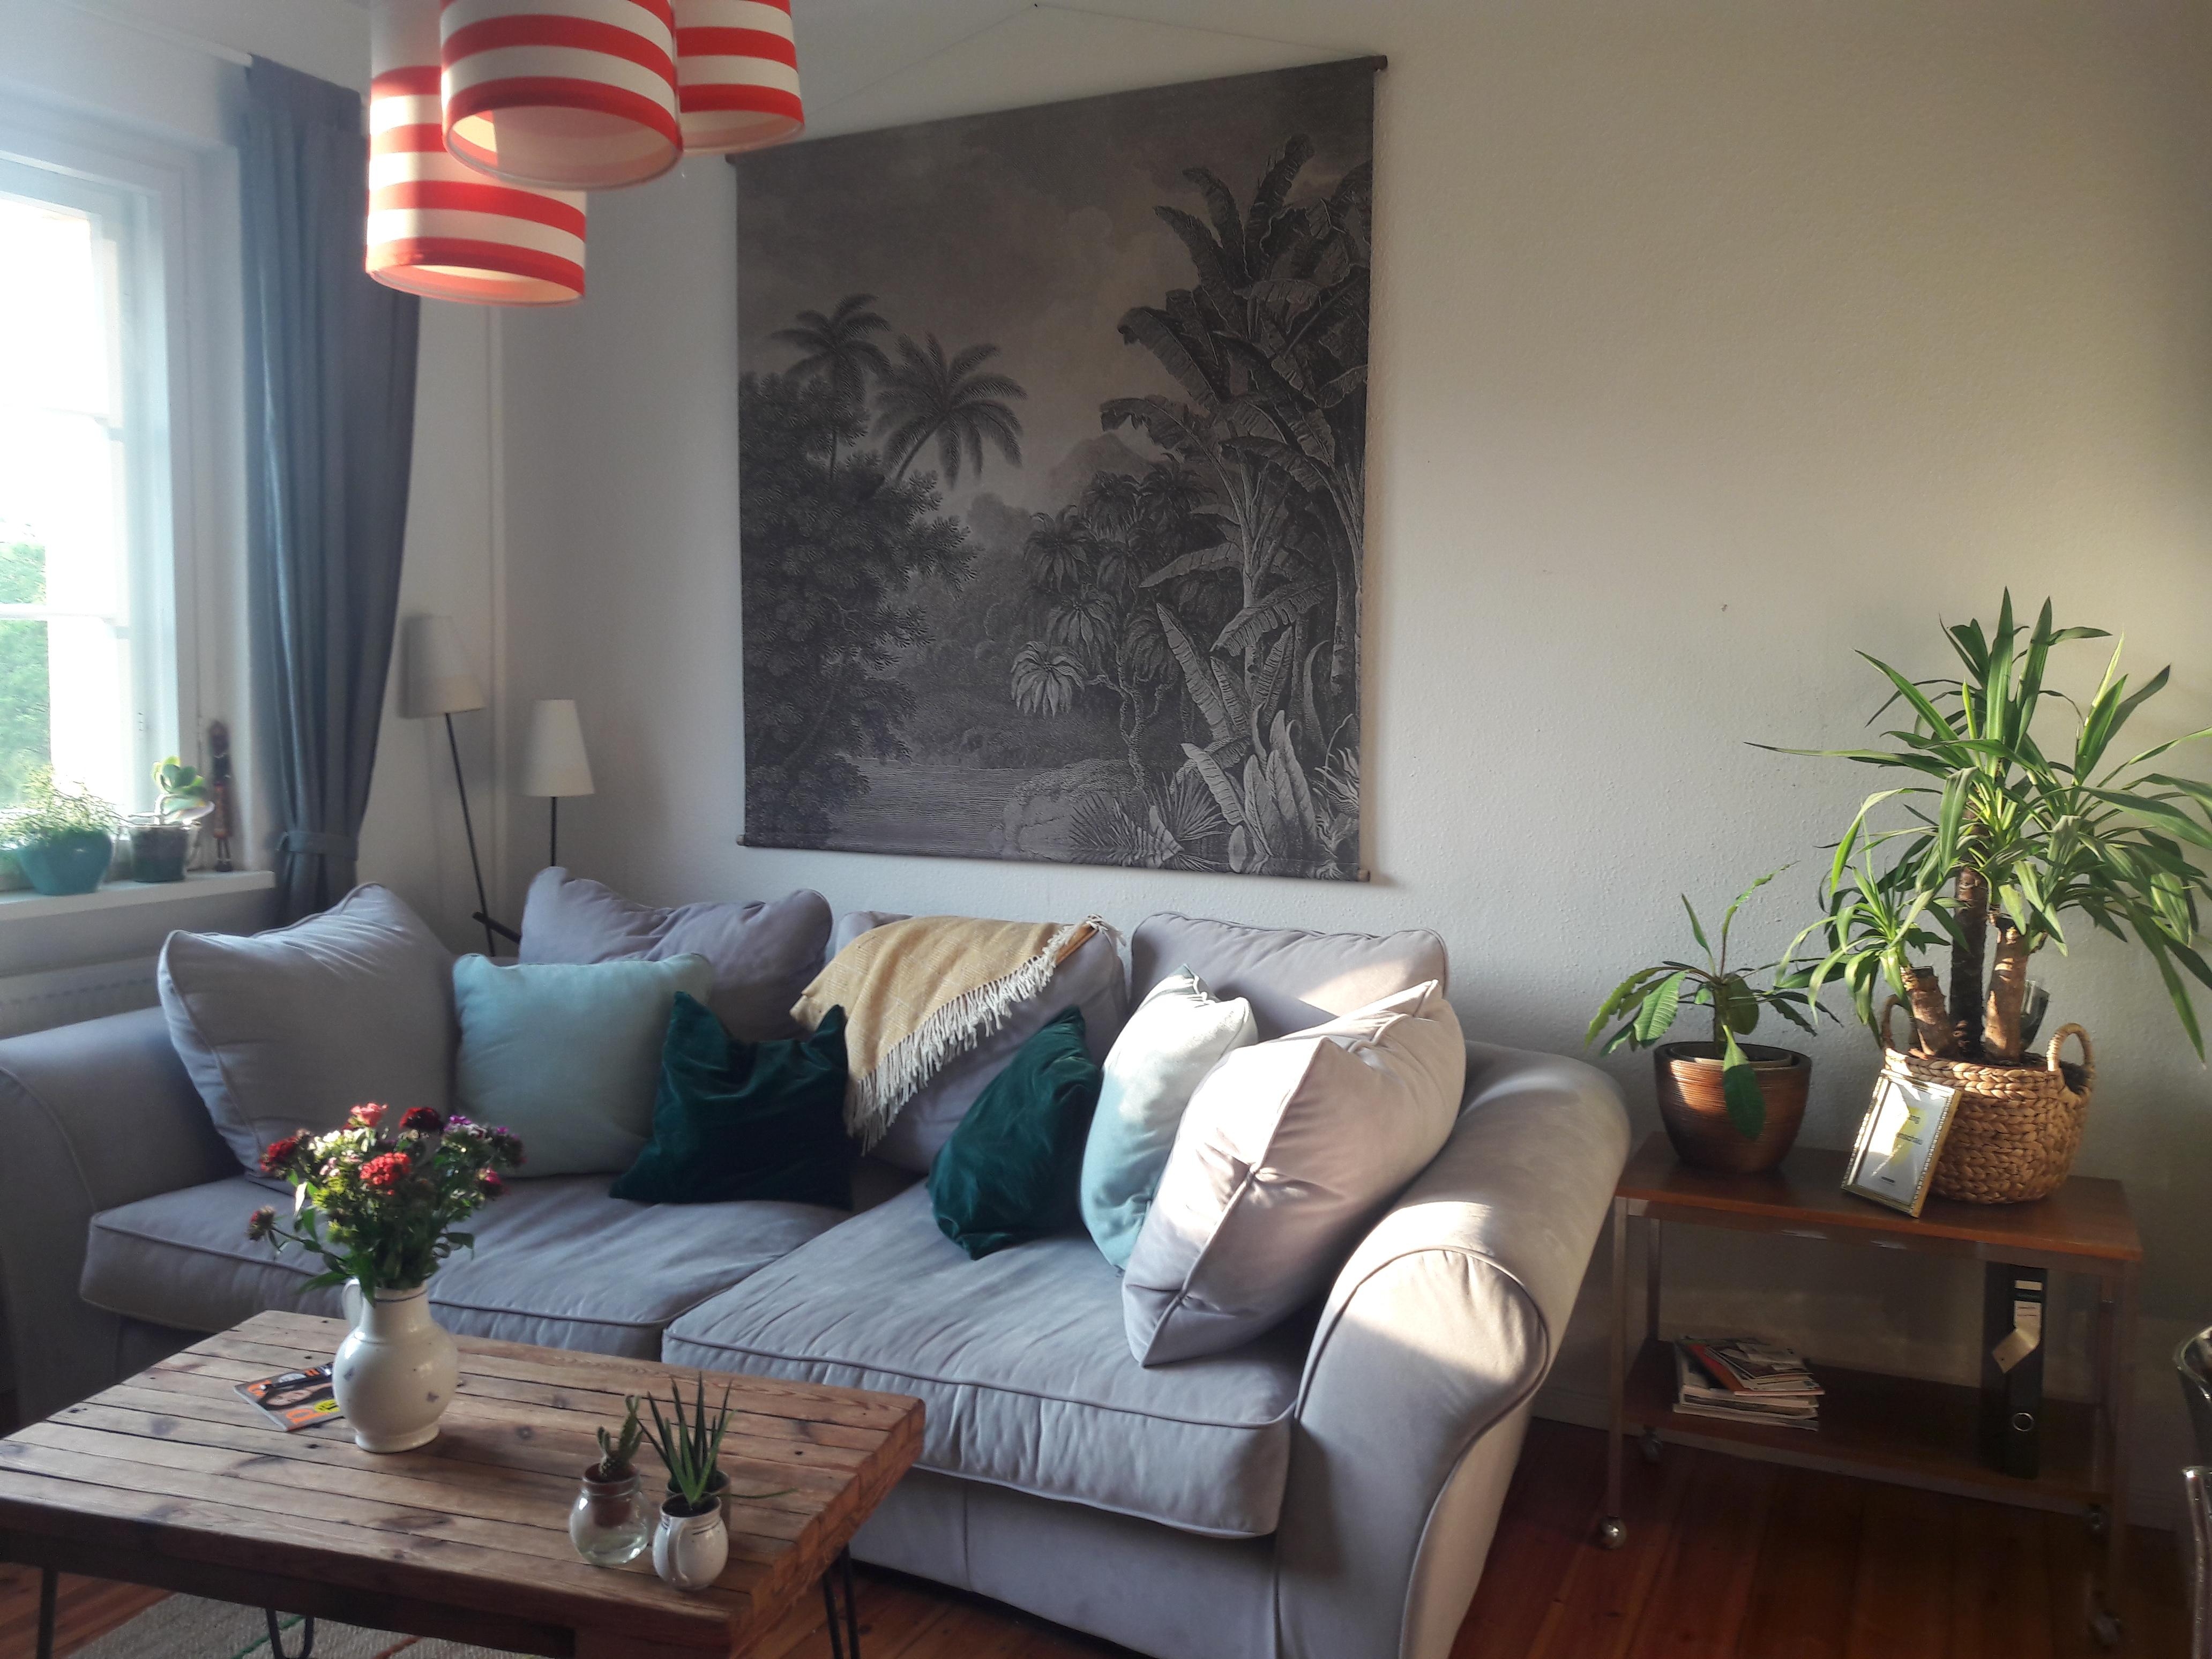 Unser Lieblingsplatz #livingroom #interiorinspo #wohnzimmer #couchstyle #cozy 